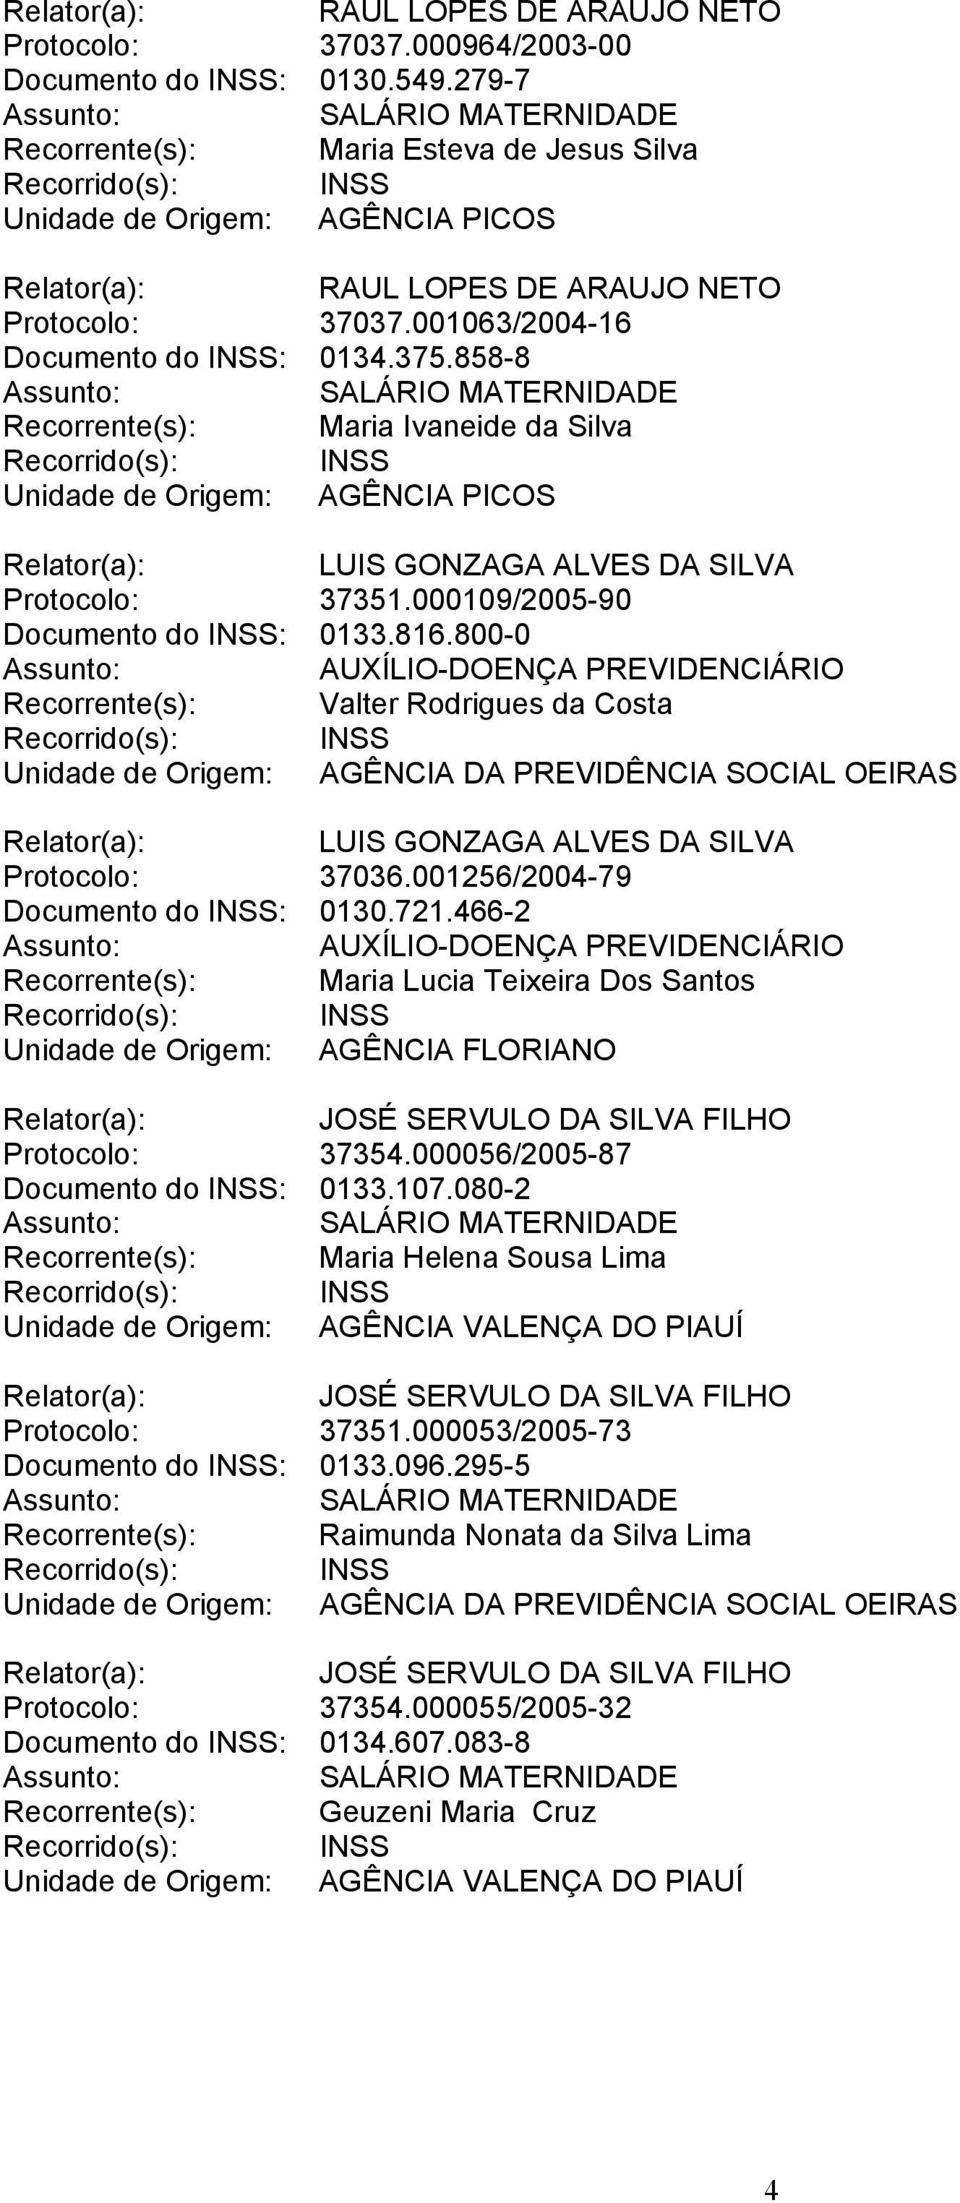 800-0 AUXÍLIO-DOENÇA PREVIDENCIÁRIO Recorrente(s): Valter Rodrigues da Costa LUIS GONZAGA ALVES DA SILVA Protocolo: 37036.001256/2004-79 Documento do INSS: 0130.721.